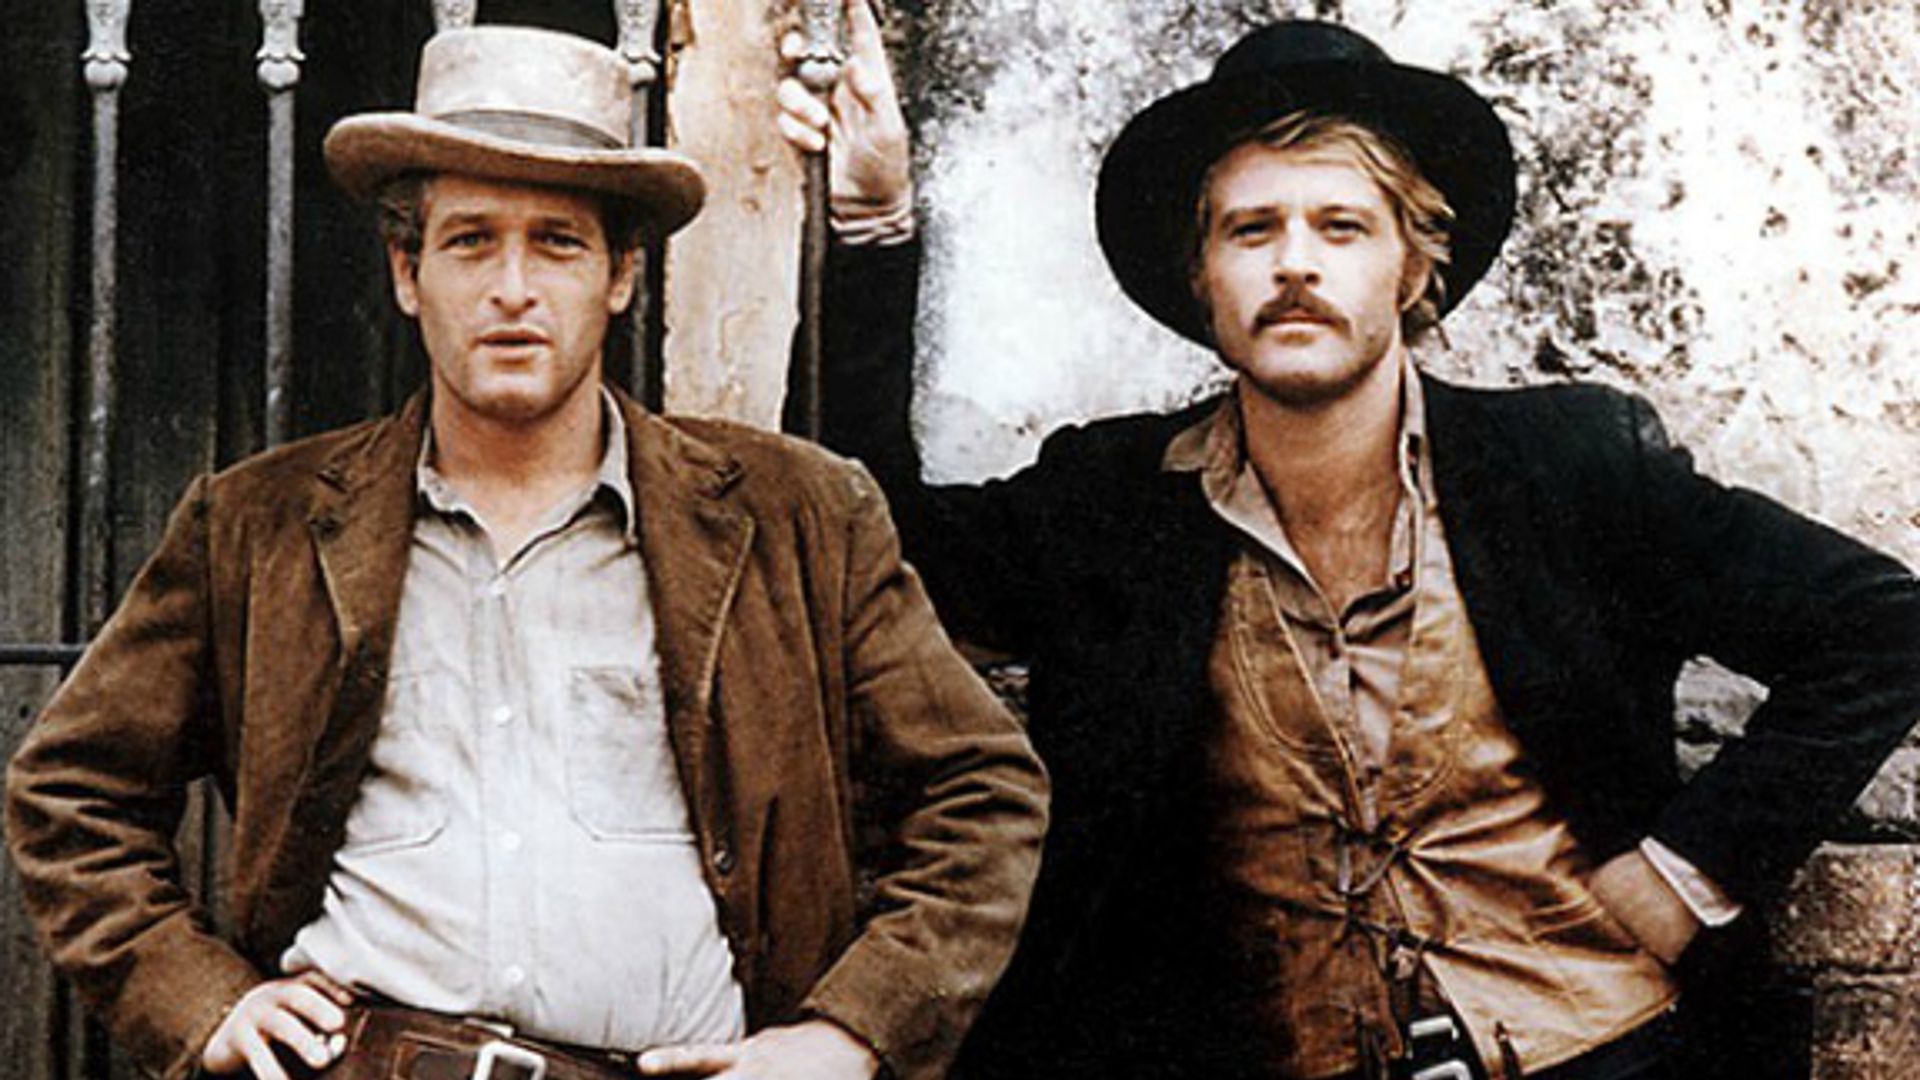 KAdr z filmu " Butch Cassidy and Sundance Kid". Widać dwóch rewolwerowców. Jeden z nich jest w brązowej marynarce i jasnej koszuli. Drugi nosi brązową koszulę i czarną marynarkę. Obydwaj stoją. Ich cechą wspólną jest kapelusz na głowie.